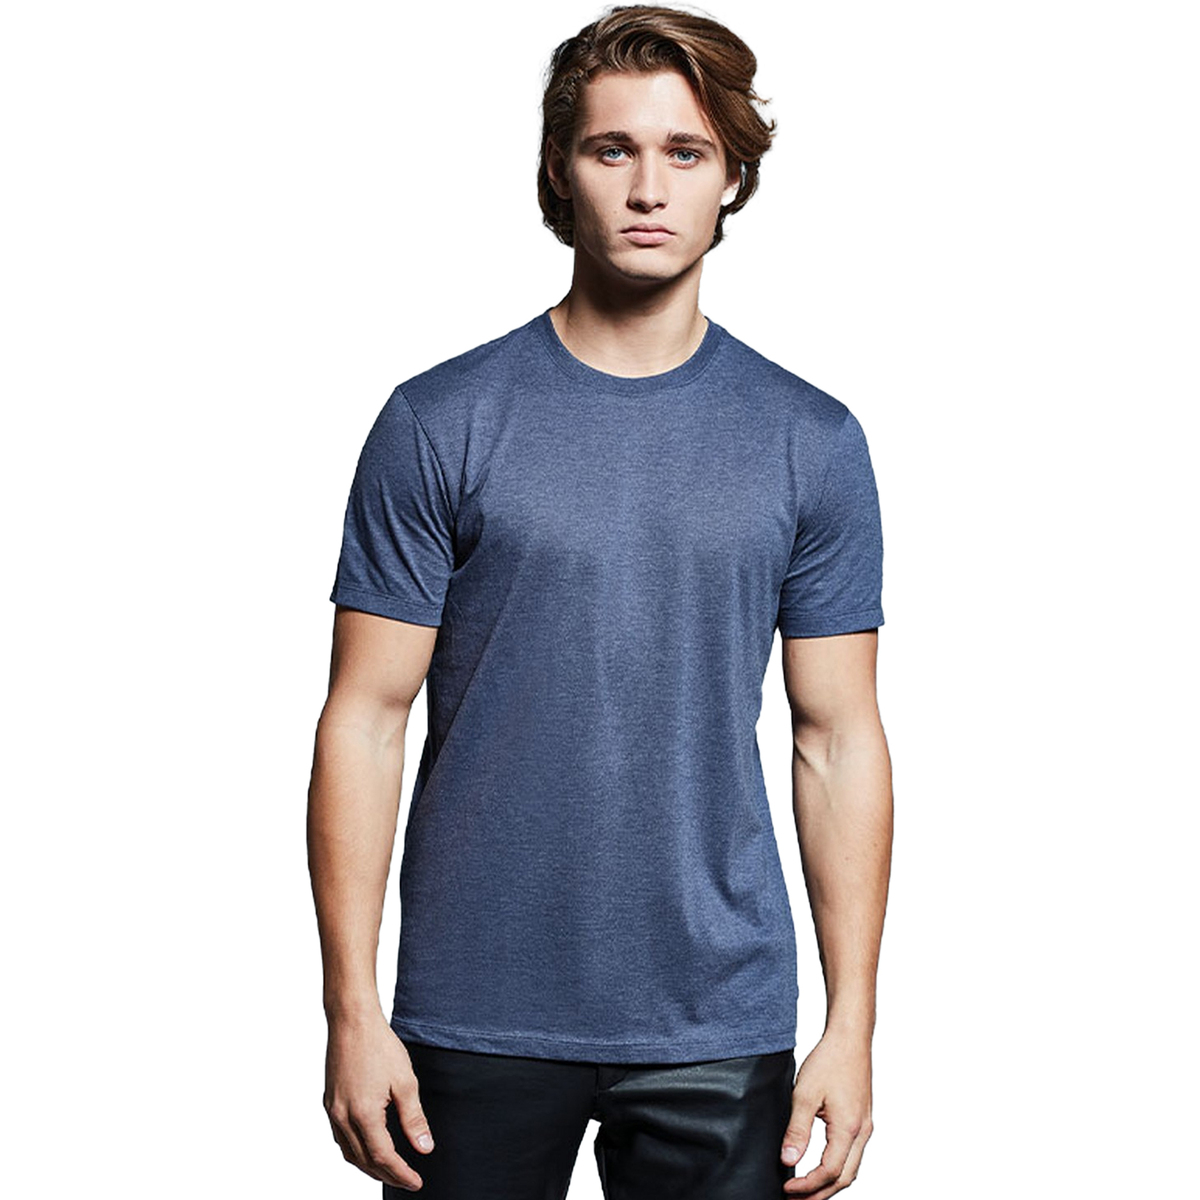 Vêtements Homme T-shirts manches courtes Anthem AM010 Bleu